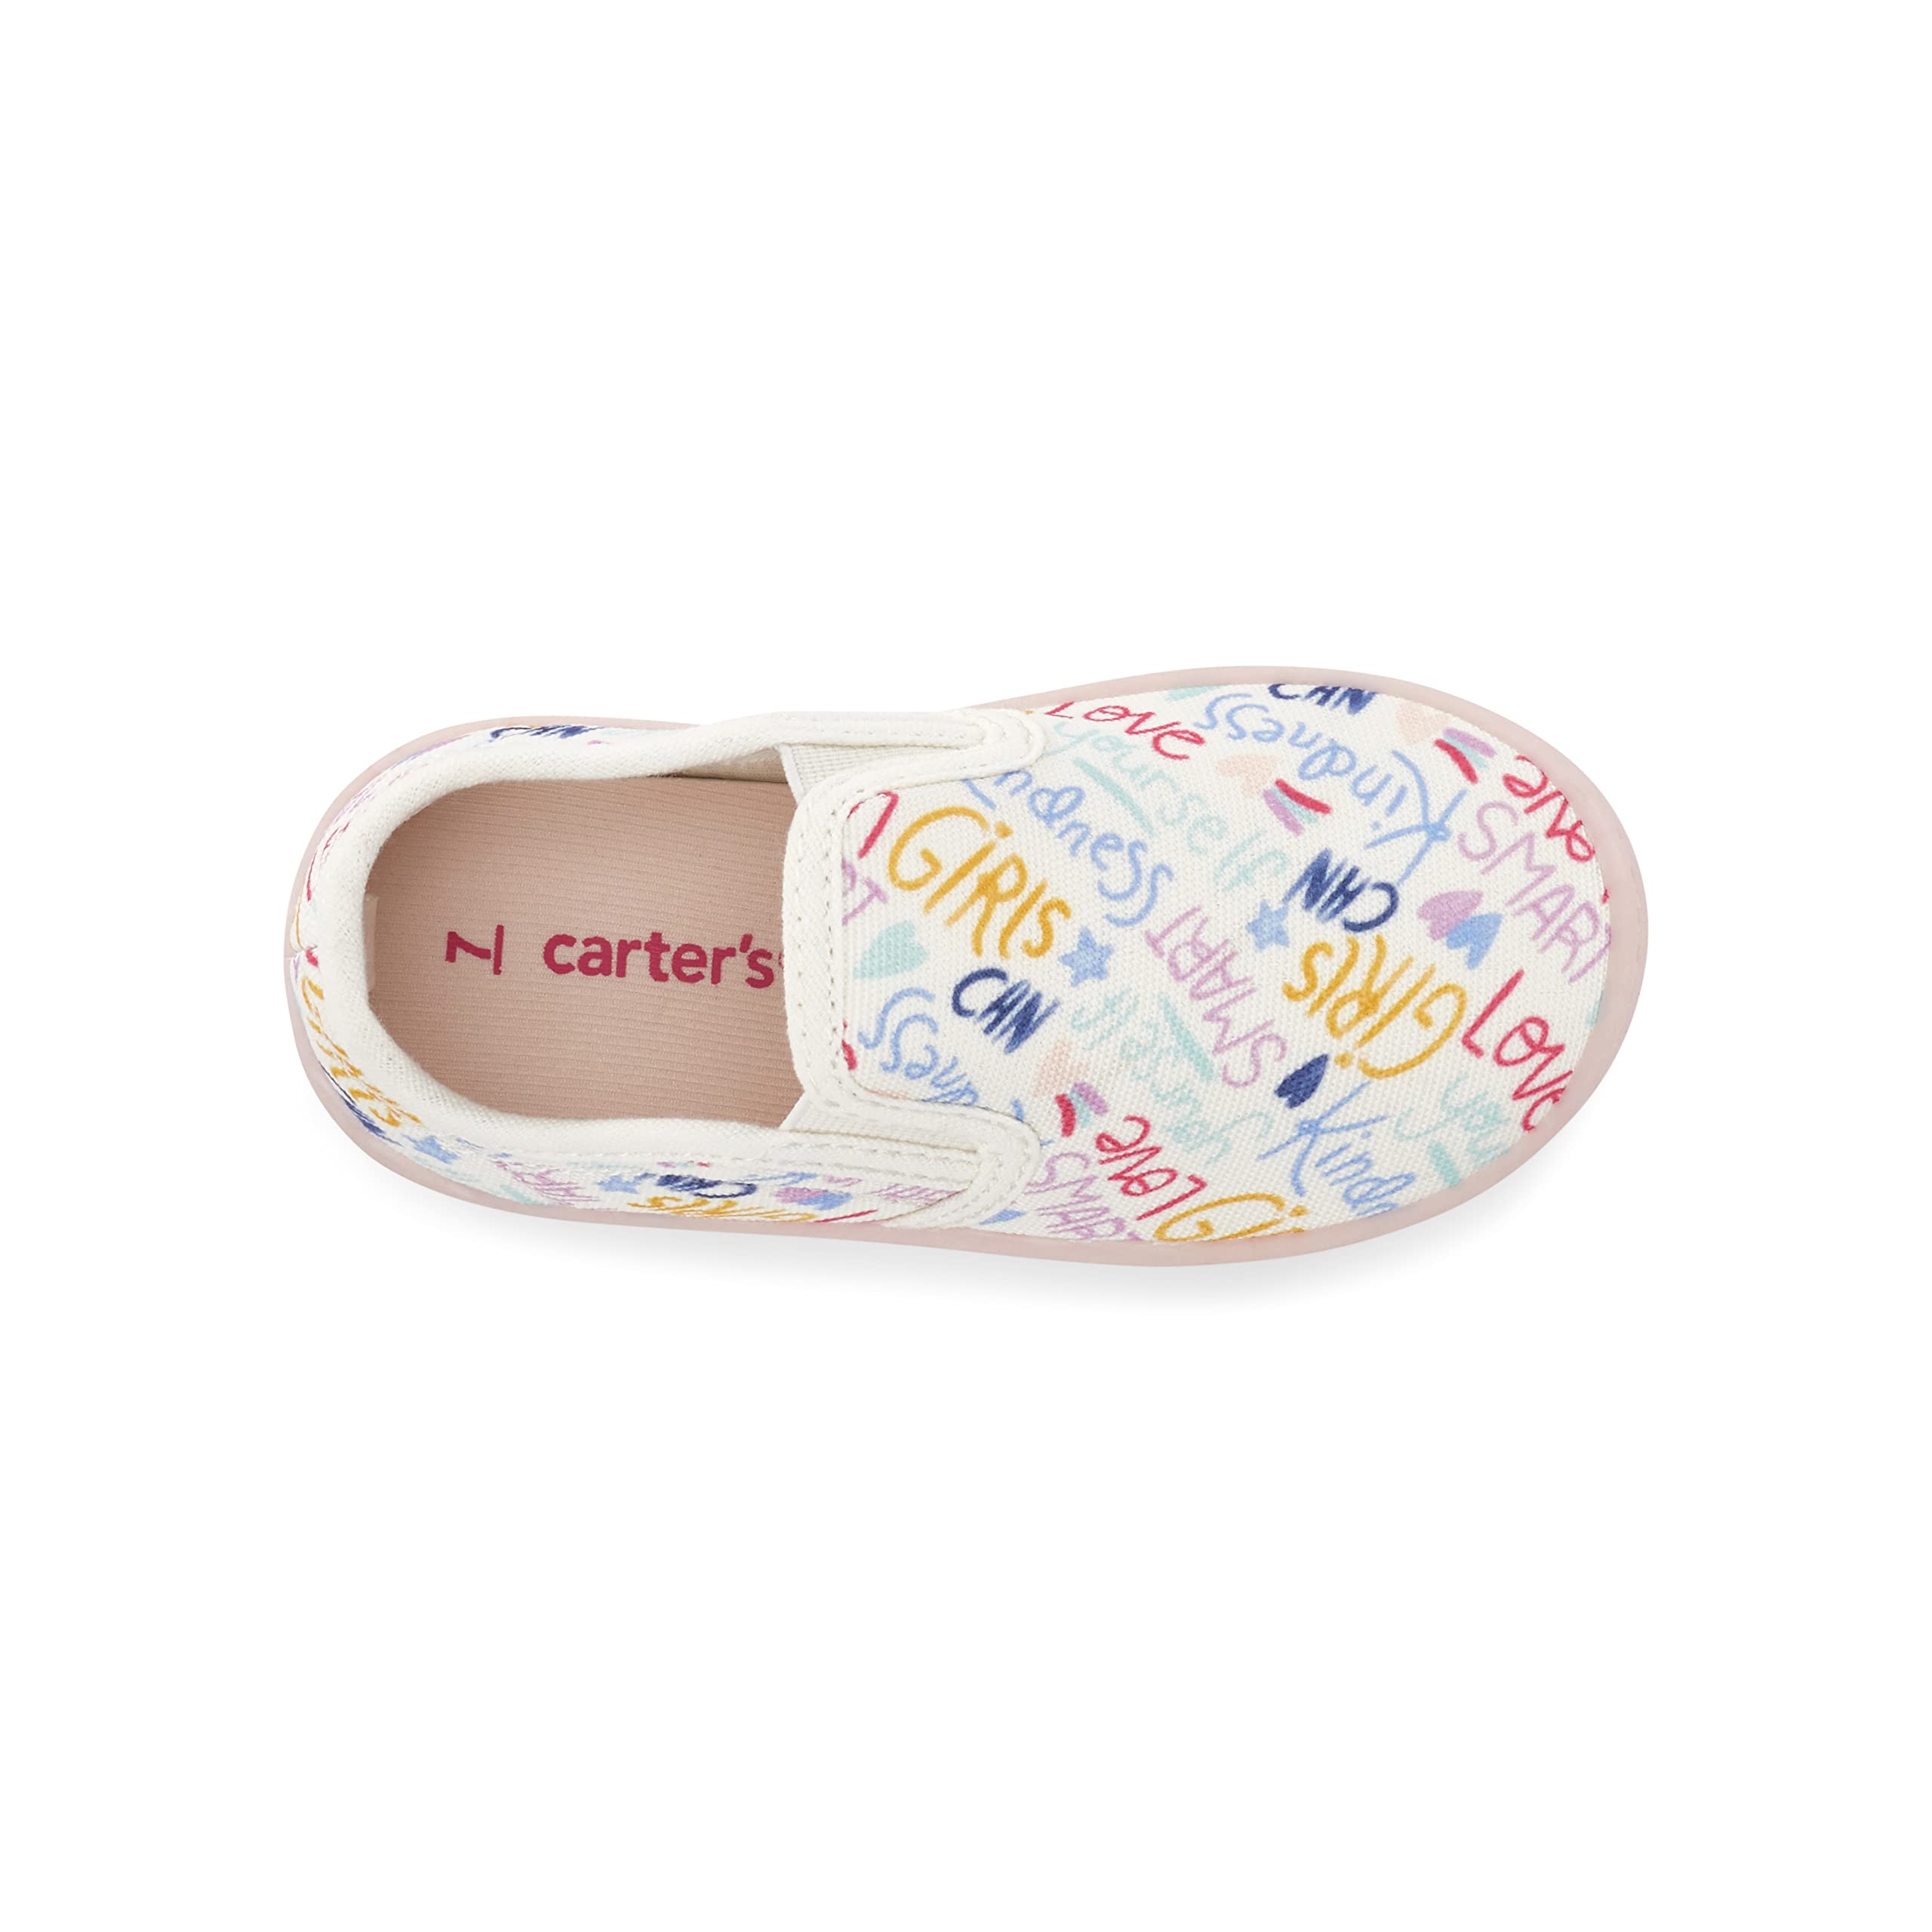 Carter's Unisex-Child Nettie Slip On Shoe